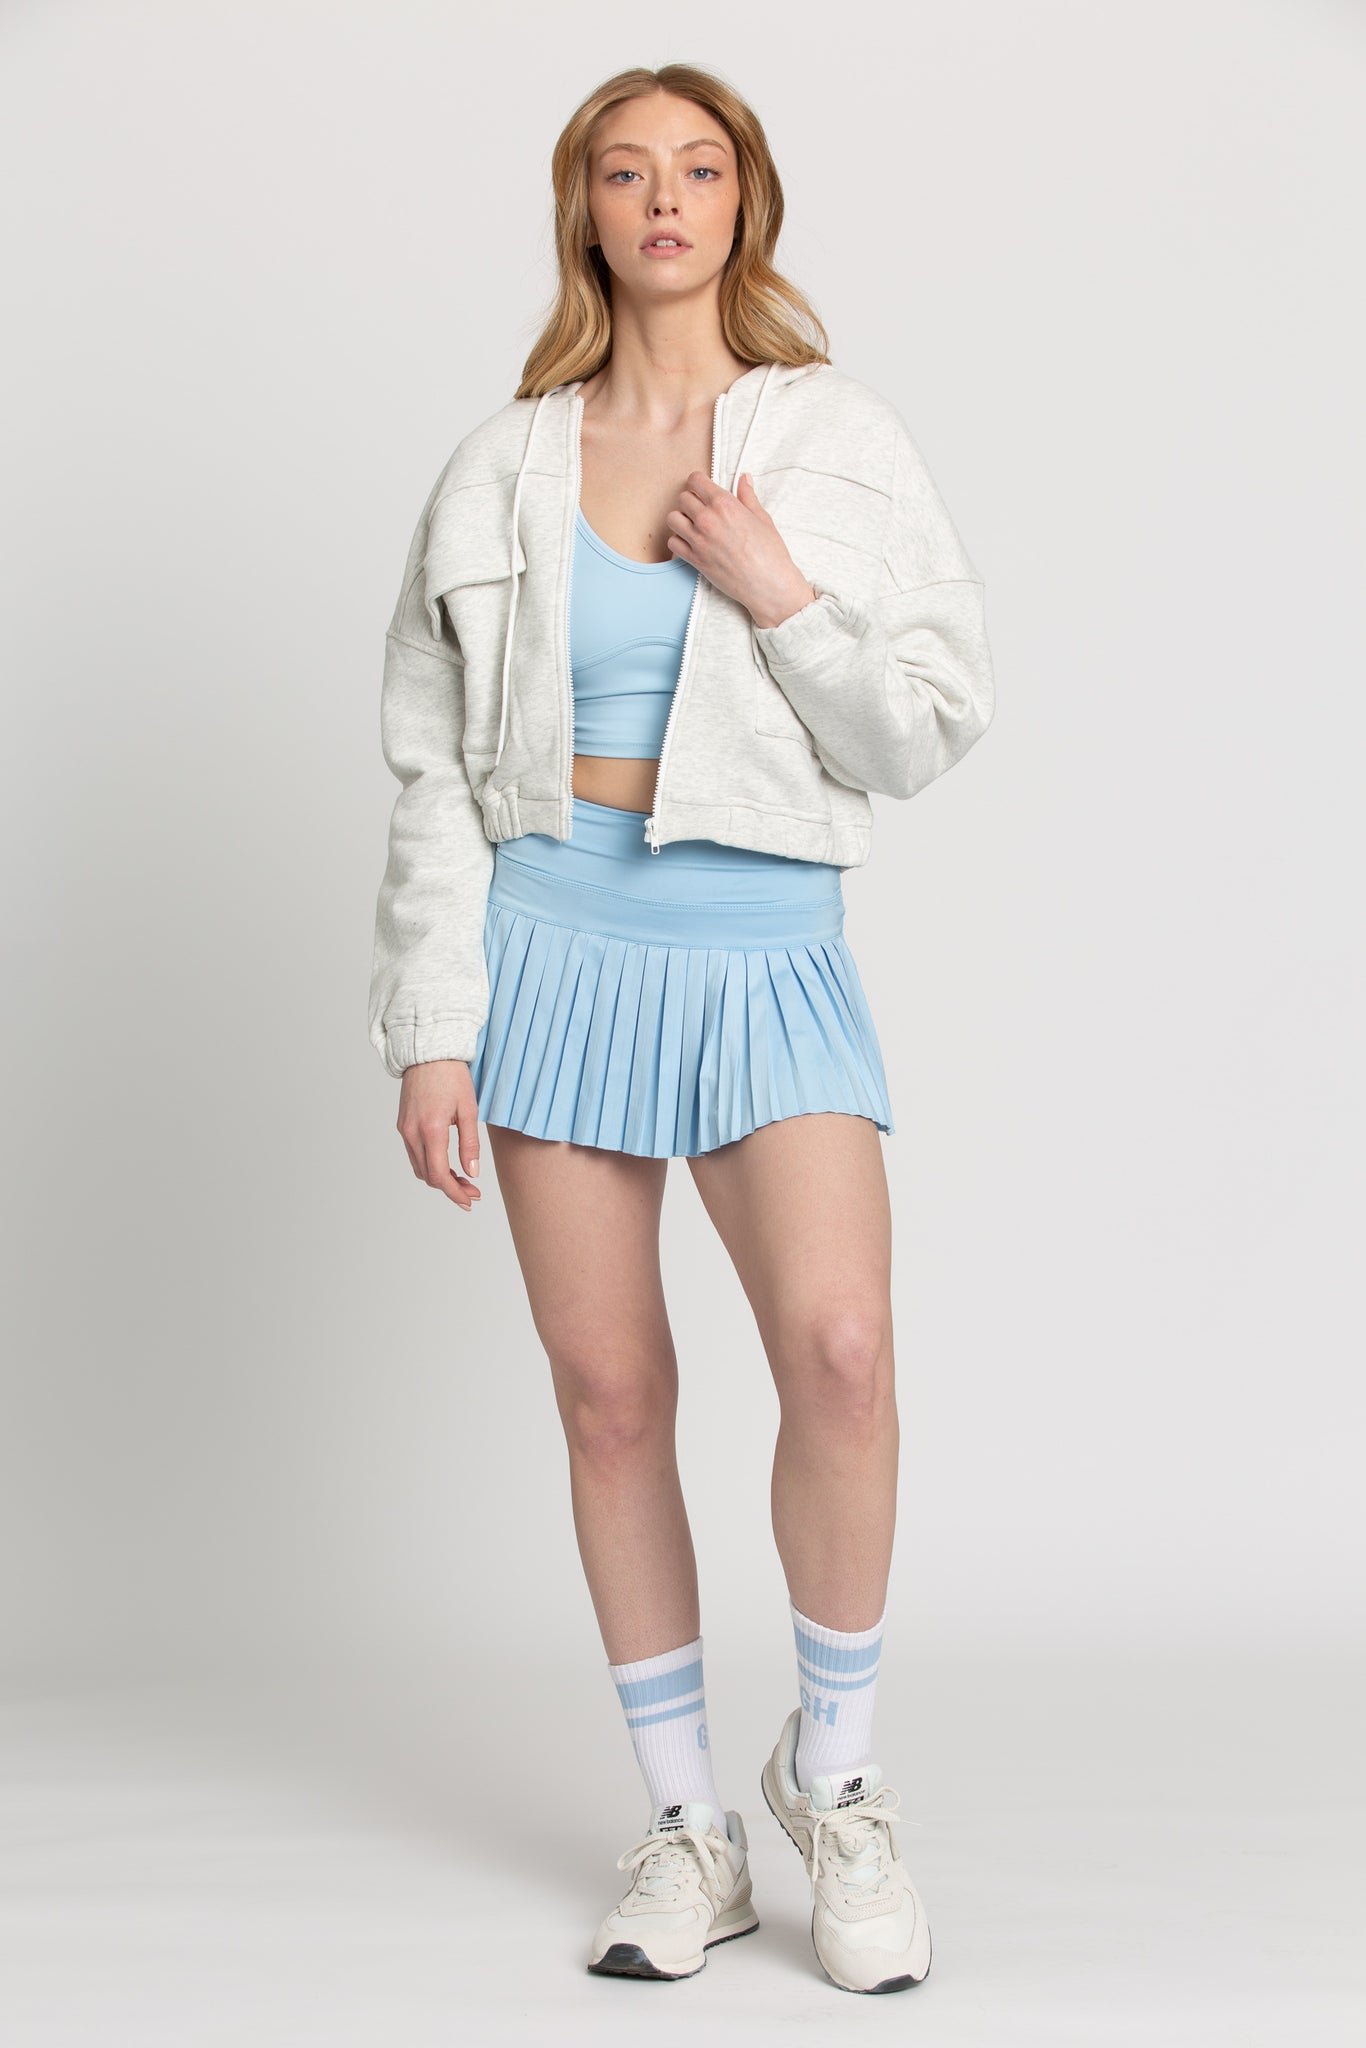 Aqua Sky Pleated Tennis Skirt